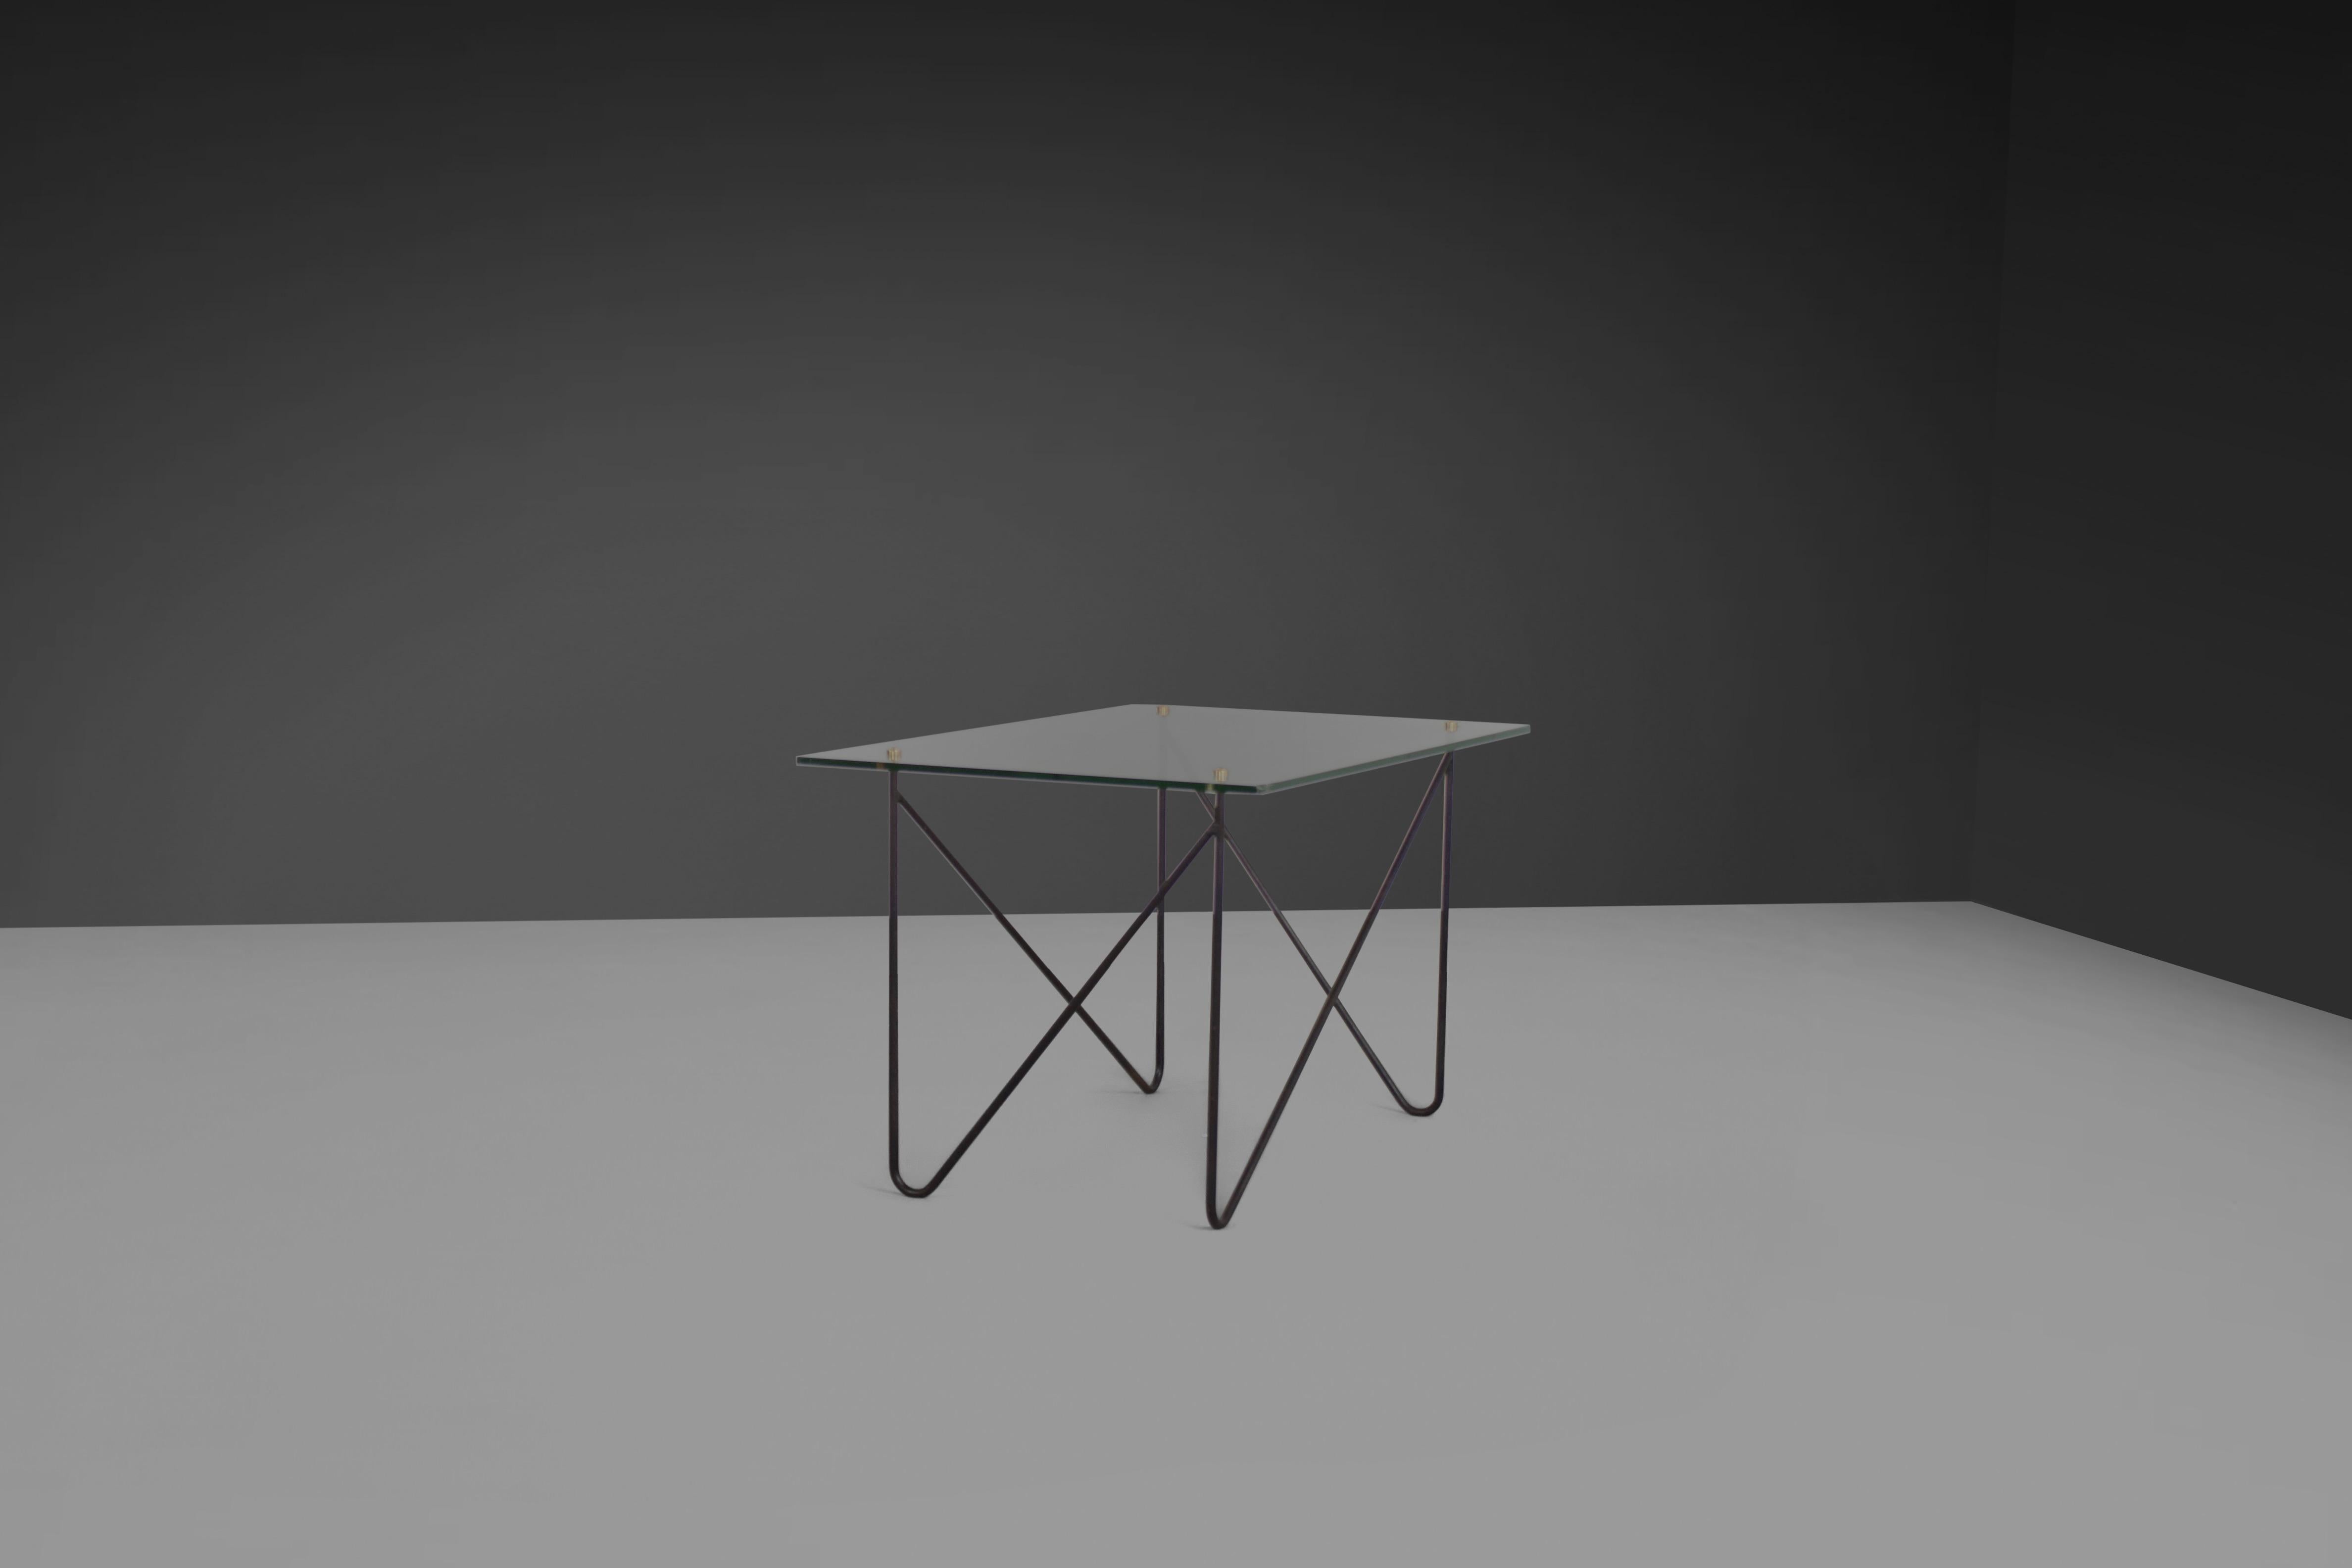 Magnifique table basse / table d'appoint en excellent état.

Fabriqué par Airborne en France dans les années 1950 

La table se compose d'un cadre en laiton laqué noir et d'un plateau en verre.

Le sommet est relié à la base par 4 fleurons ronds en